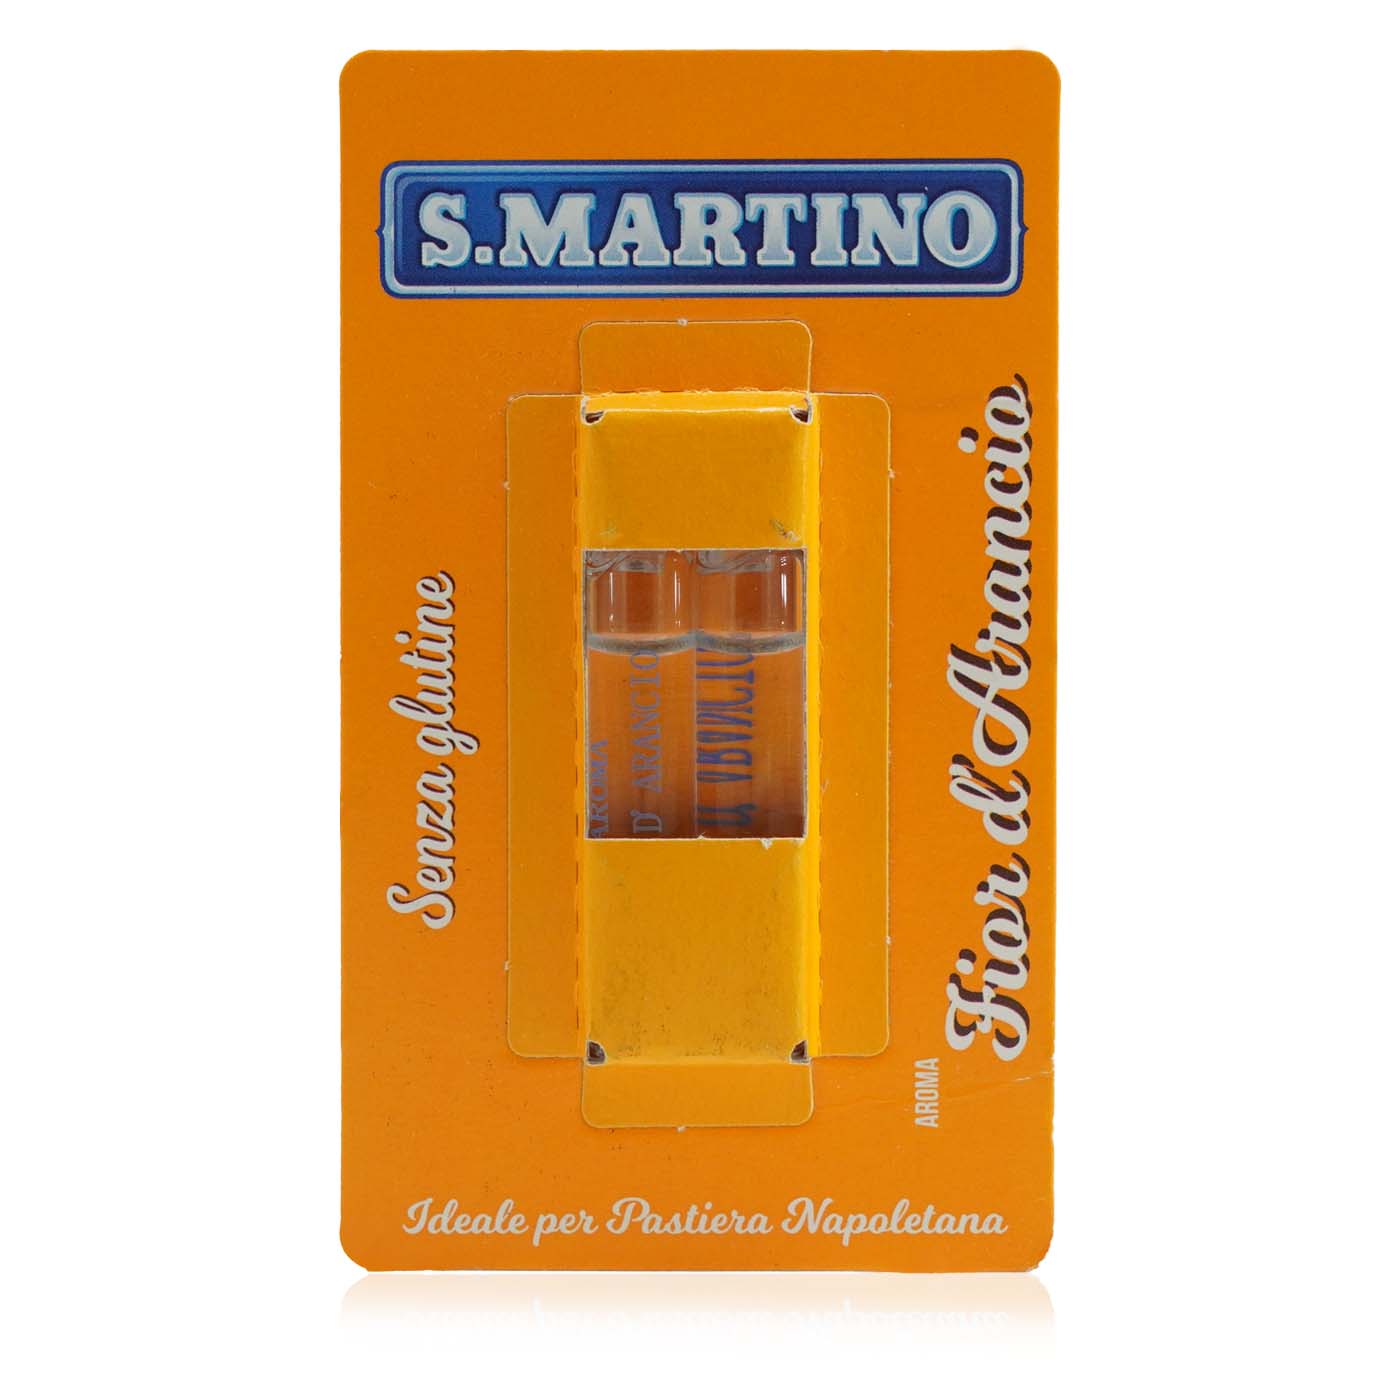 S. MARTINO Aroma Fior d'Arancio senza glutine – Orangenblütenaroma ohne Gluten - 0,004l